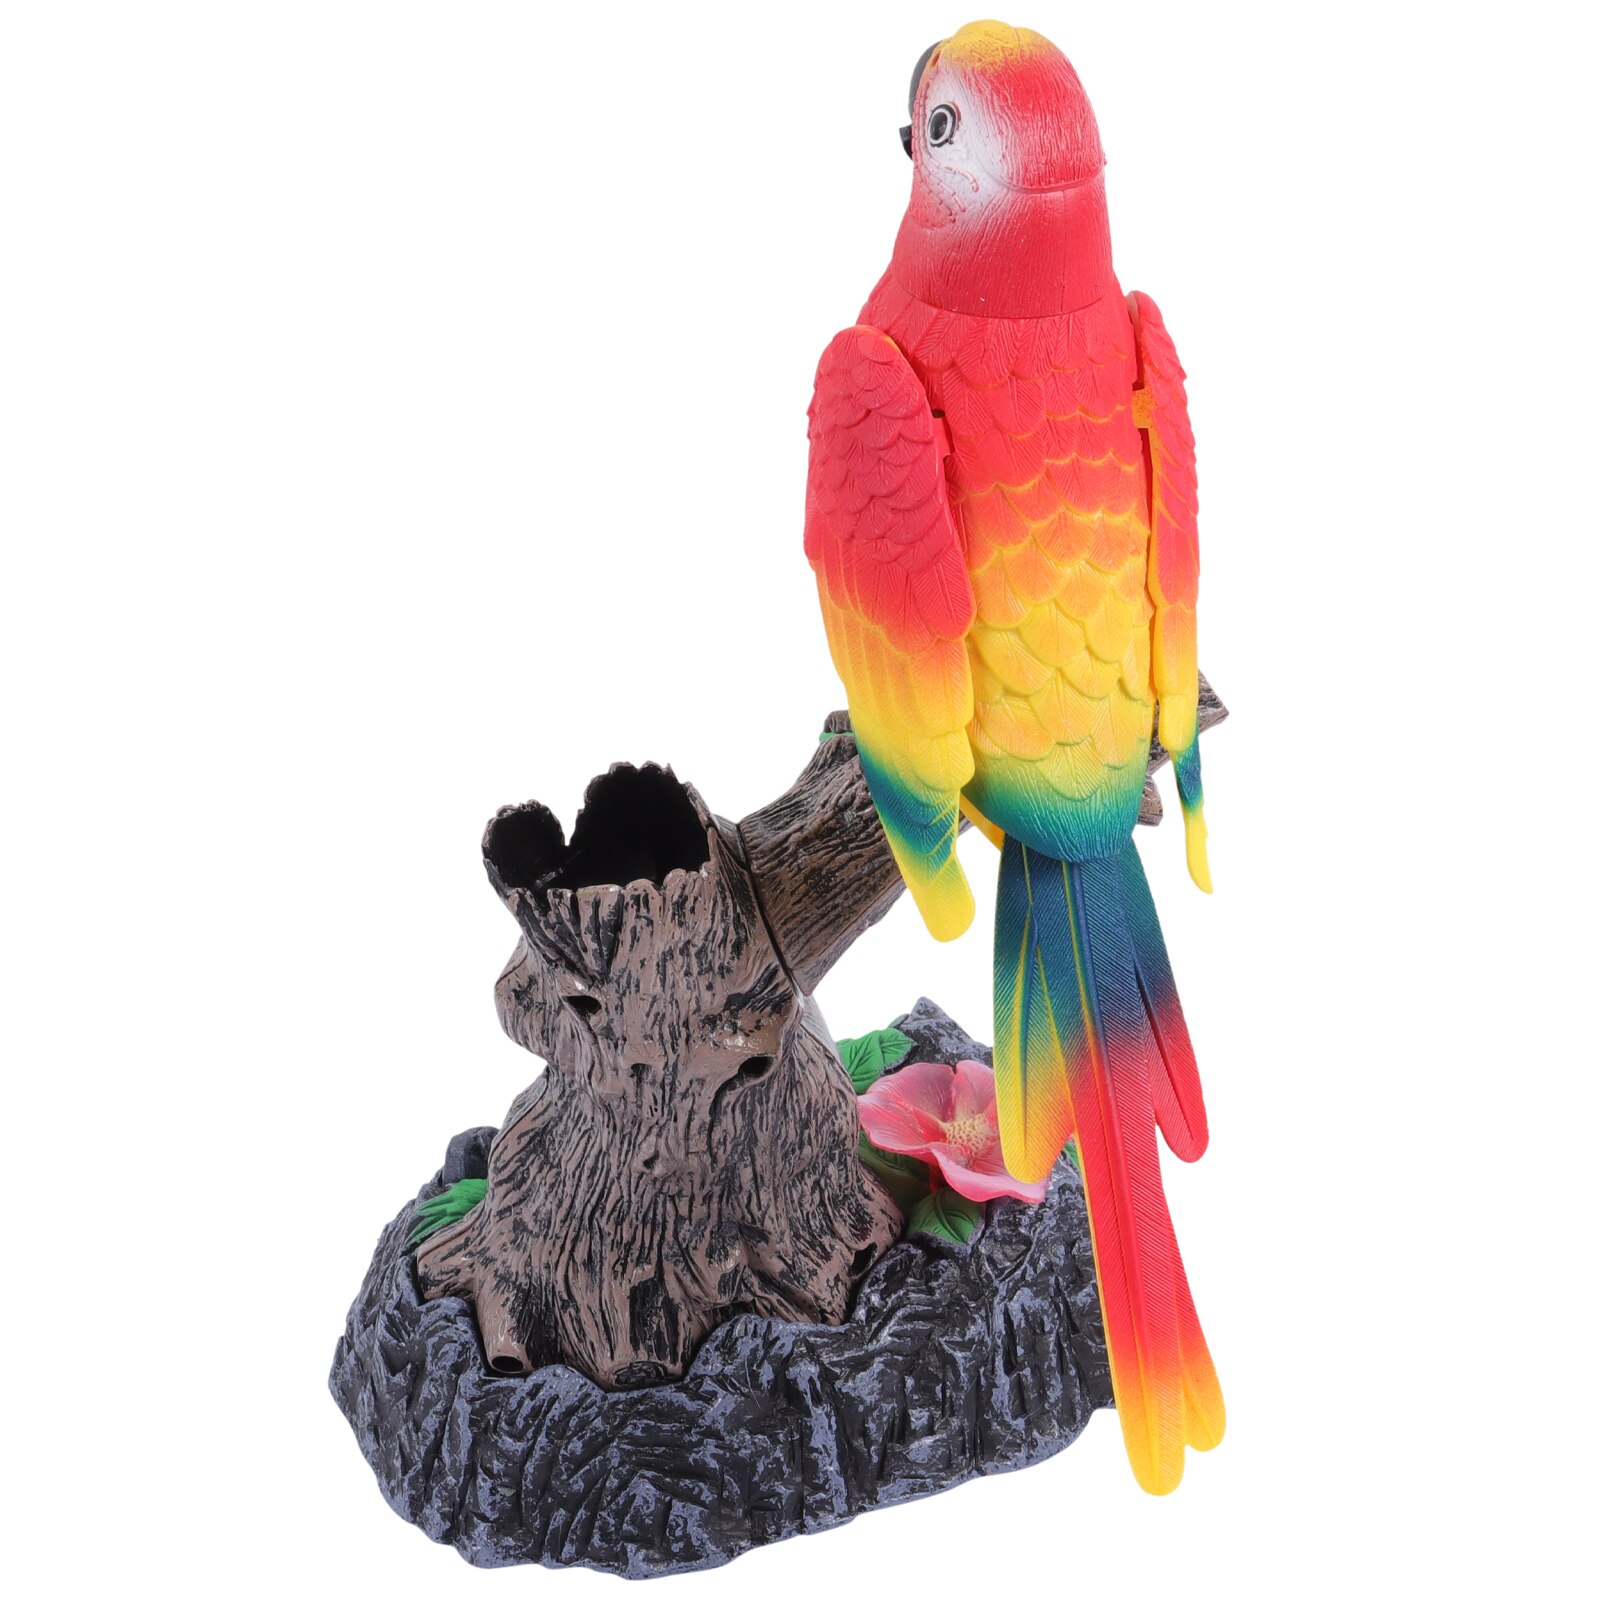 앵무새 음성 제어 장난감 소리 활성화 새 지저분한 디지털 녹음기, 다채로운 작은 플라스틱  인공 새